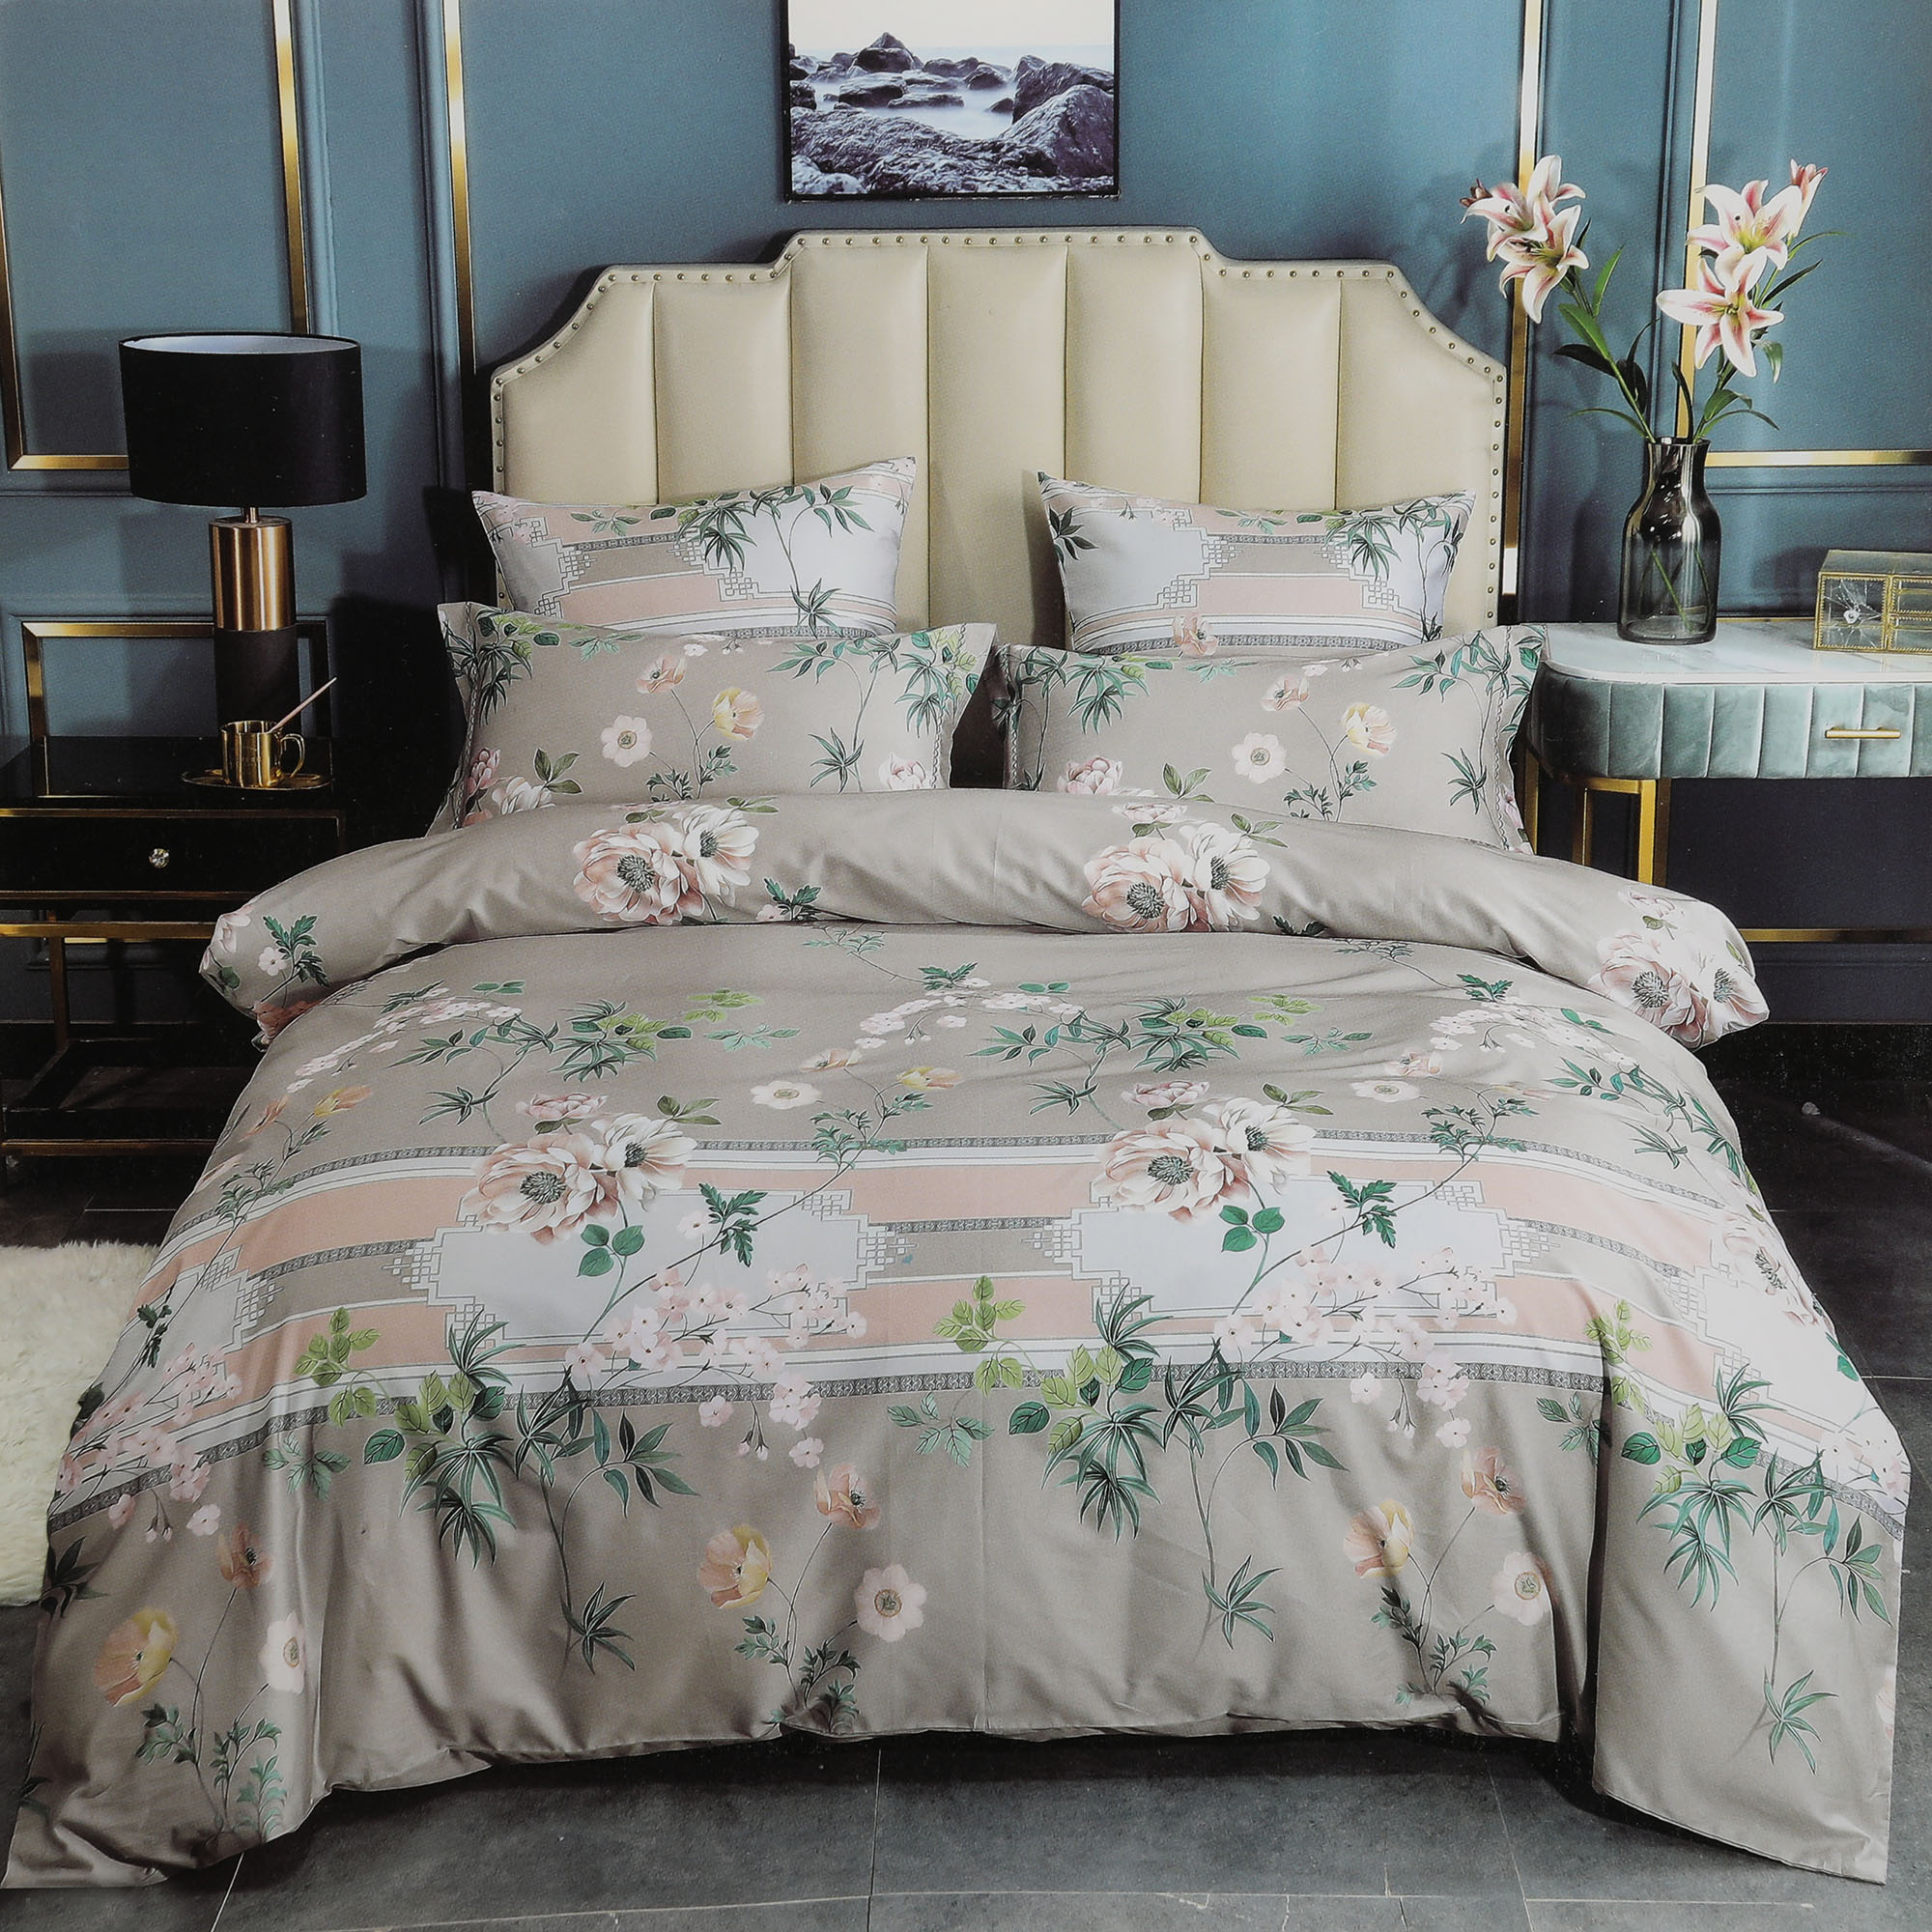 Комплект постельного белья Wonne Traum elegance wall grey Полуторный постельный комплект mona liza полуторный 70х70